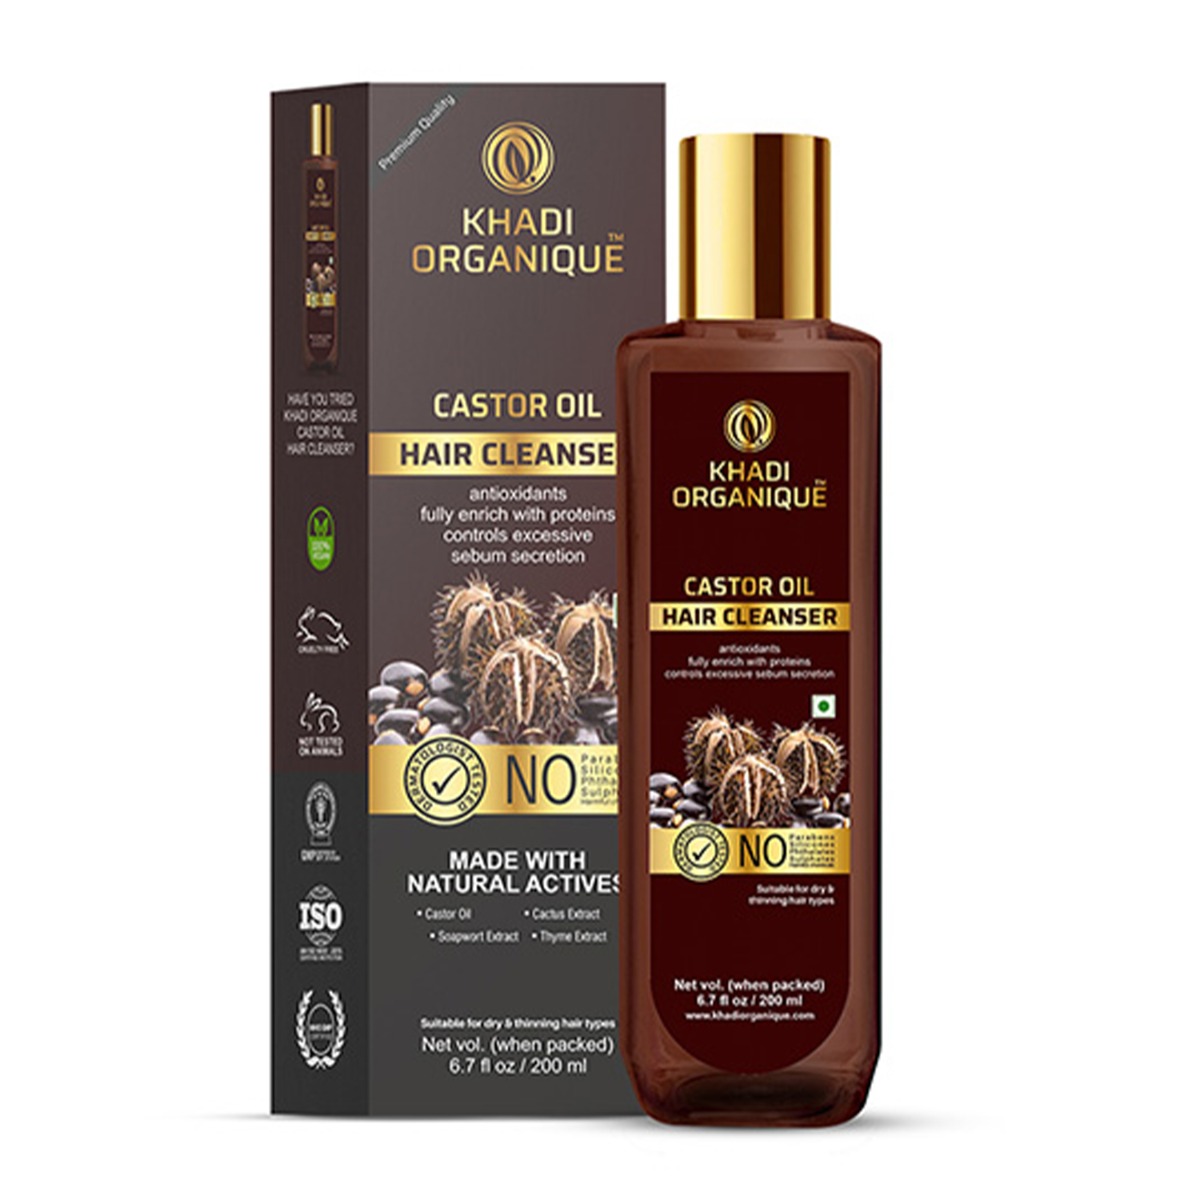 Khadi Organique Castor Oil Hair Cleanser, 200ml